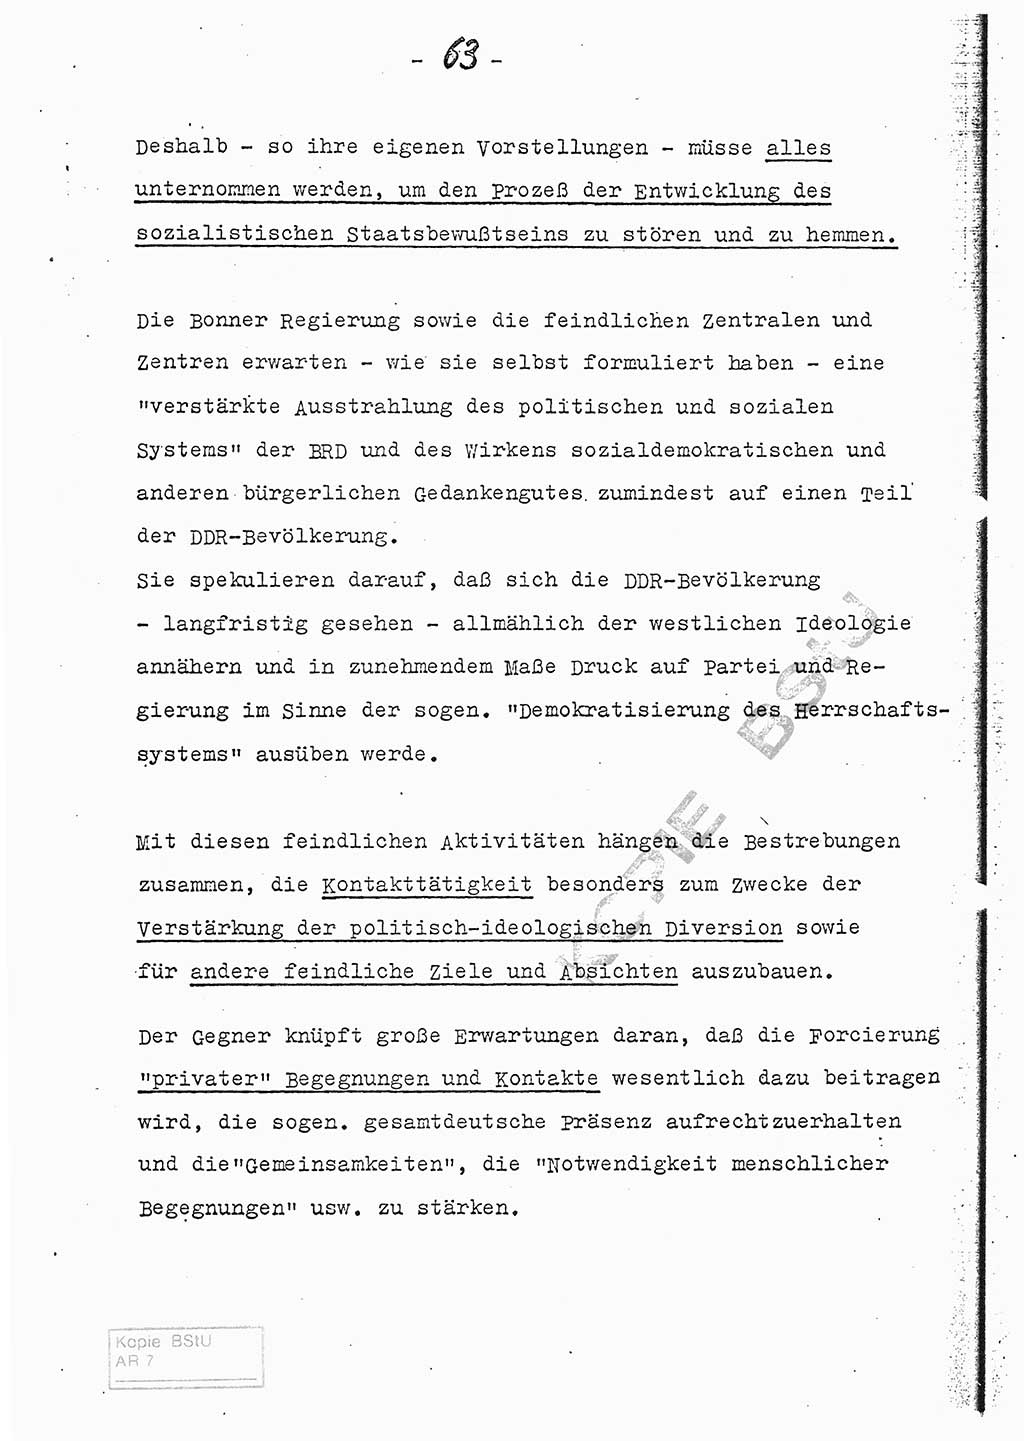 Referat (Entwurf) des Genossen Minister (Generaloberst Erich Mielke) auf der Dienstkonferenz 1972, Ministerium für Staatssicherheit (MfS) [Deutsche Demokratische Republik (DDR)], Der Minister, Geheime Verschlußsache (GVS) 008-150/72, Berlin 25.2.1972, Seite 63 (Ref. Entw. DK MfS DDR Min. GVS 008-150/72 1972, S. 63)